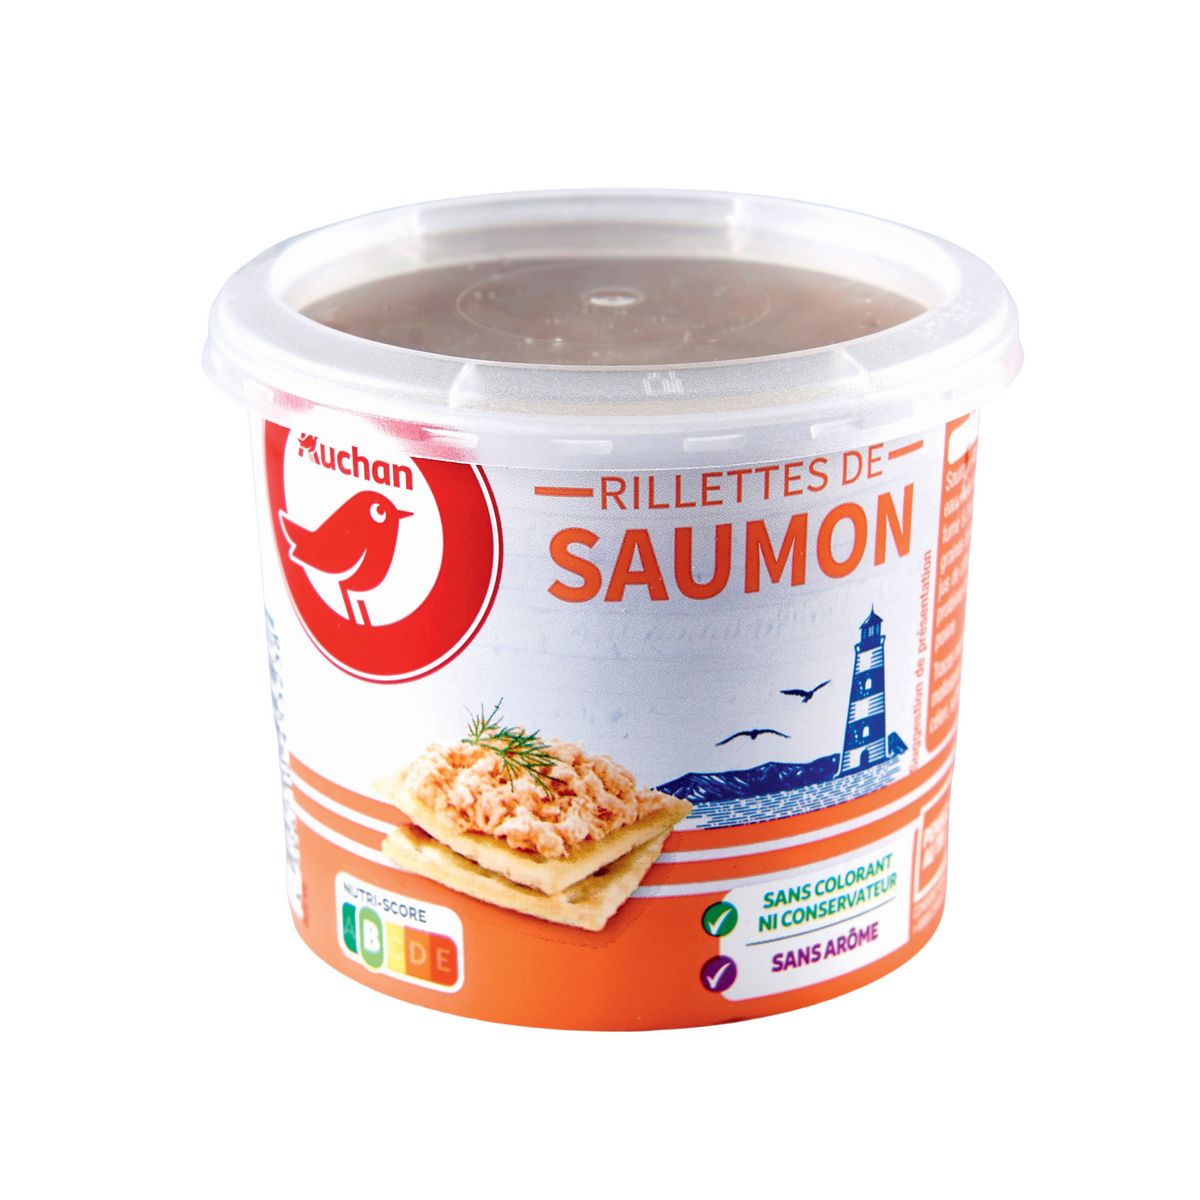 AUCHAN Rillettes de saumon 150g